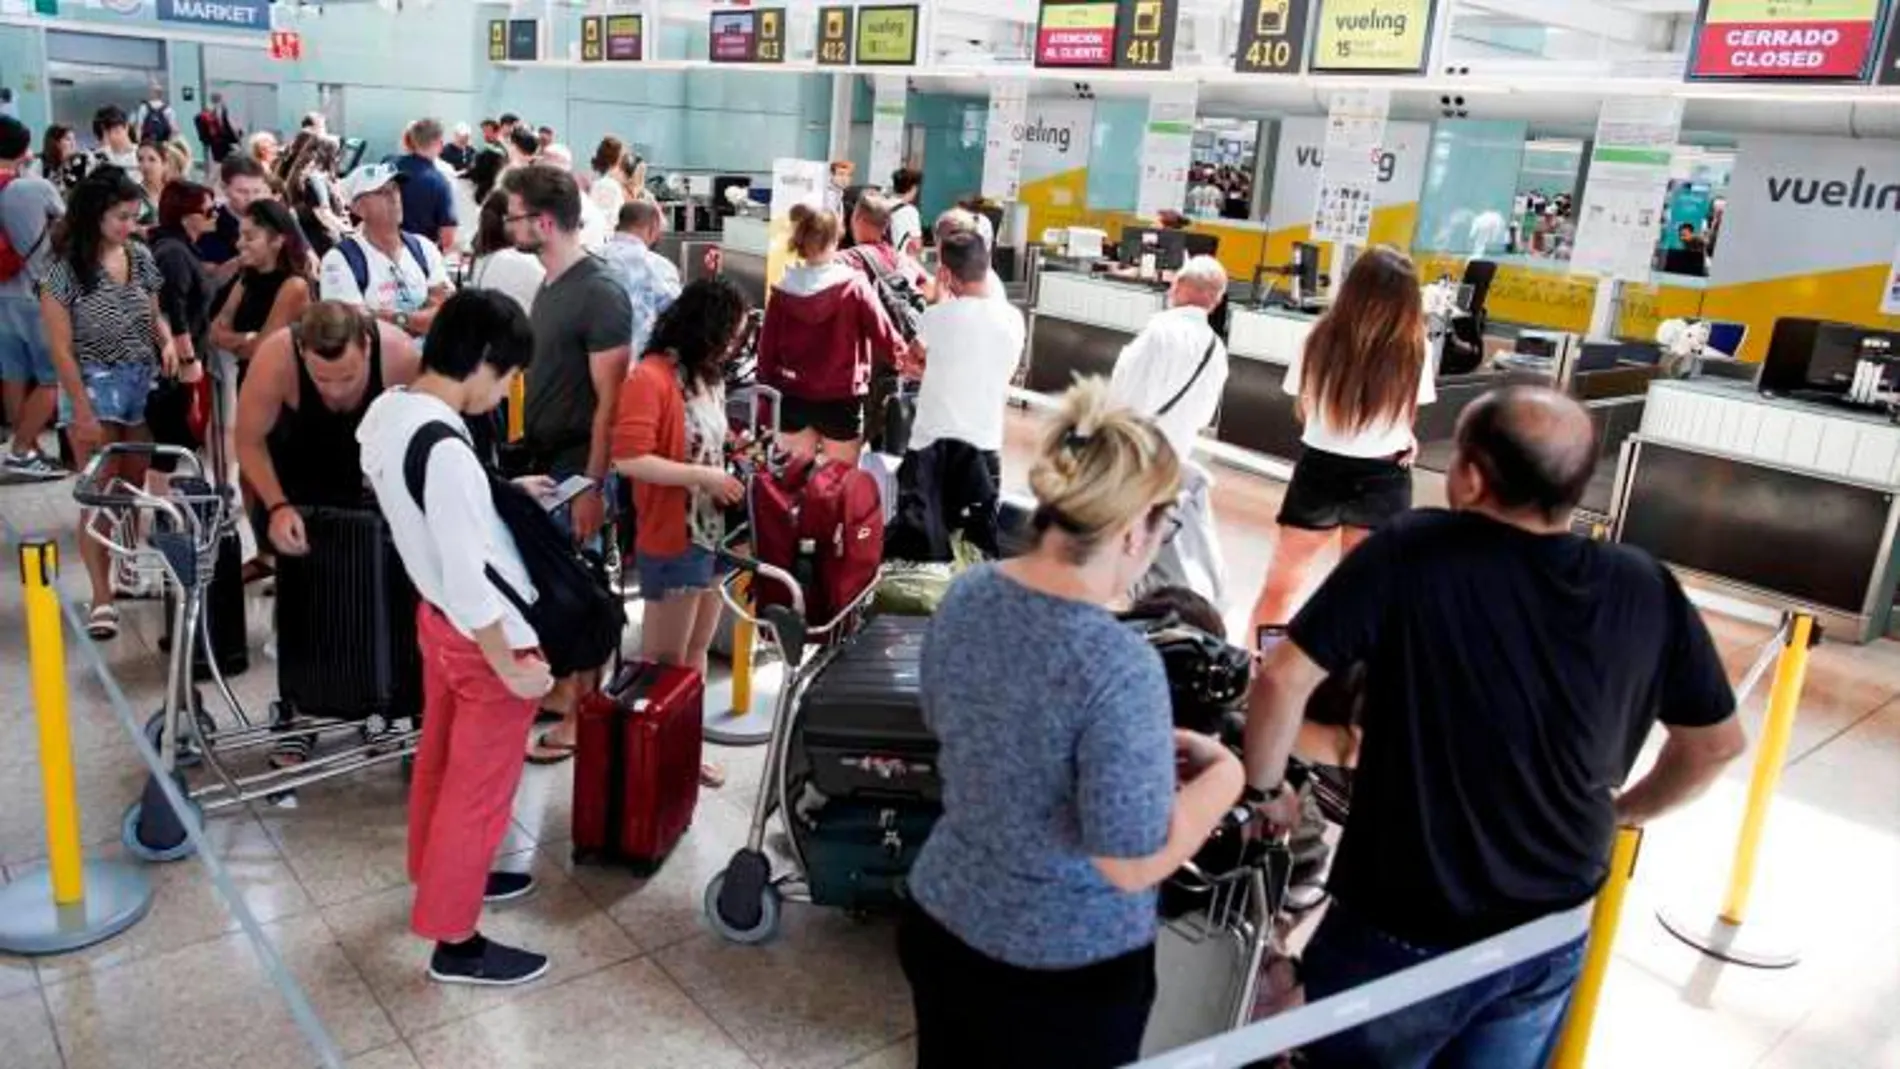 Pasajeros en el aeropuerto de El Prat haciendo cola en una jornada de huelga / Efe